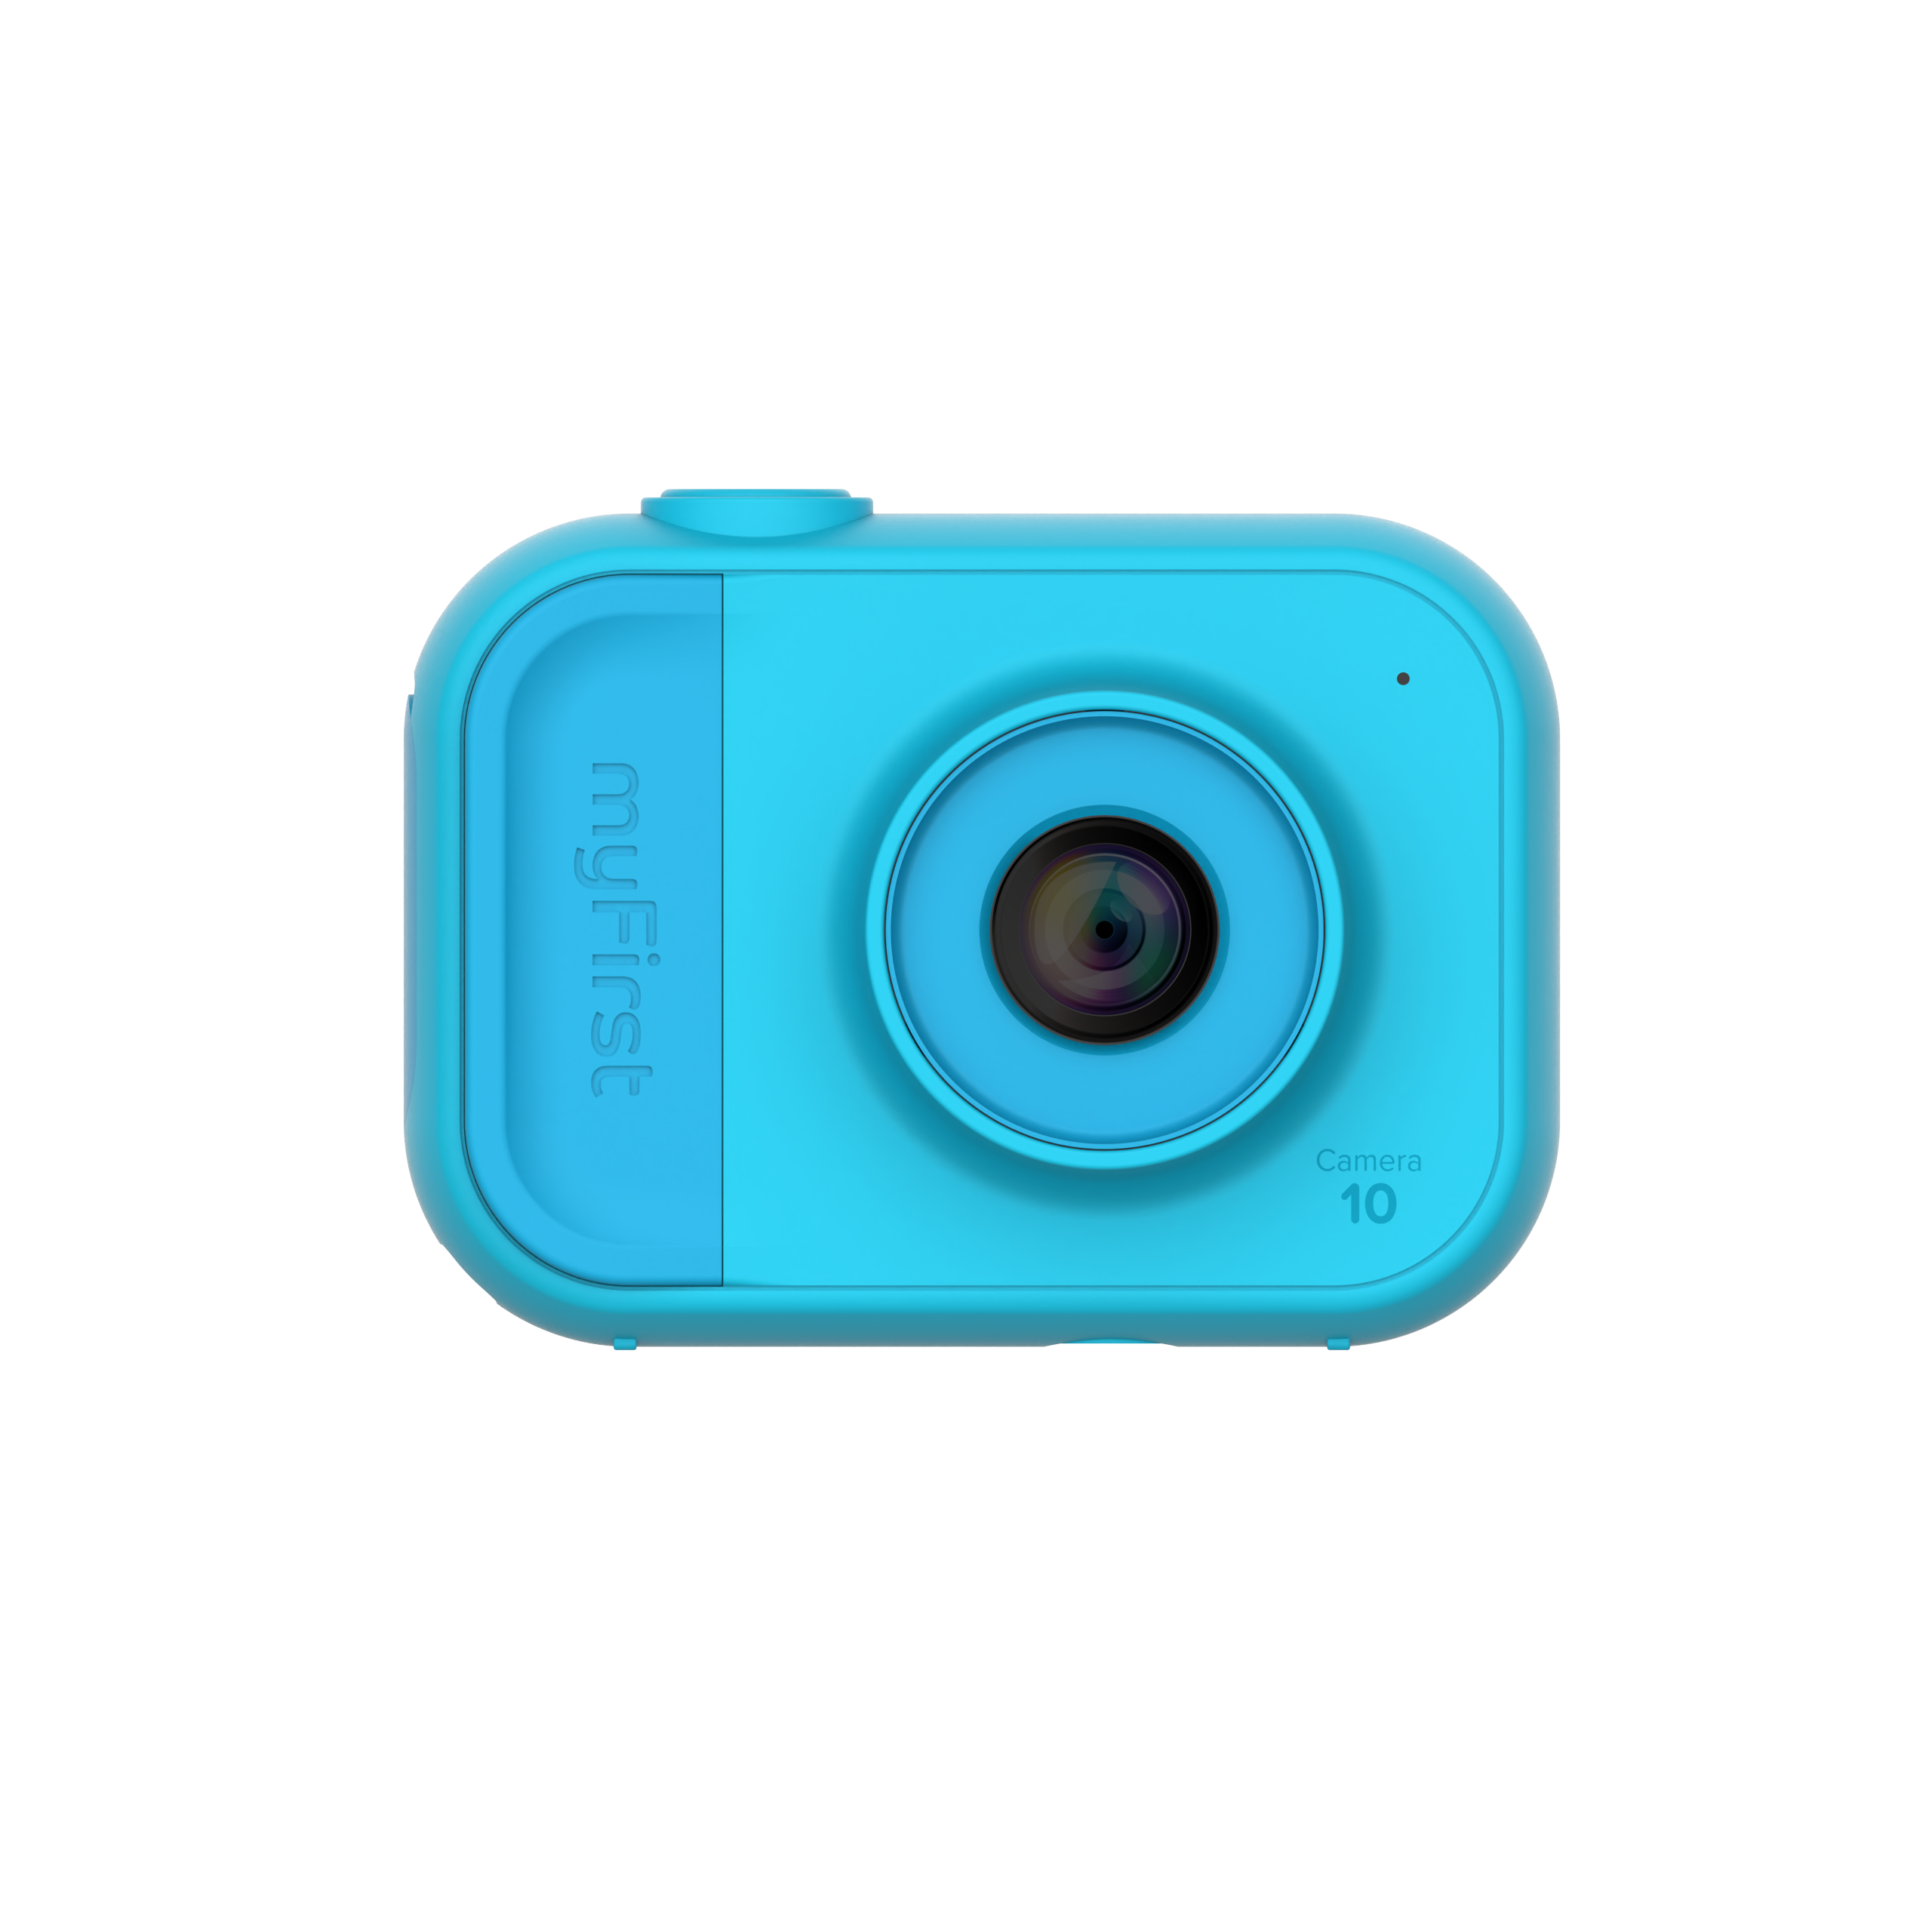 myFirst Camera 10 マイファーストカメラ 10【オンライン限定】キッズデジタルカメラ/三脚スタンド装着可能/初めてのカメラ